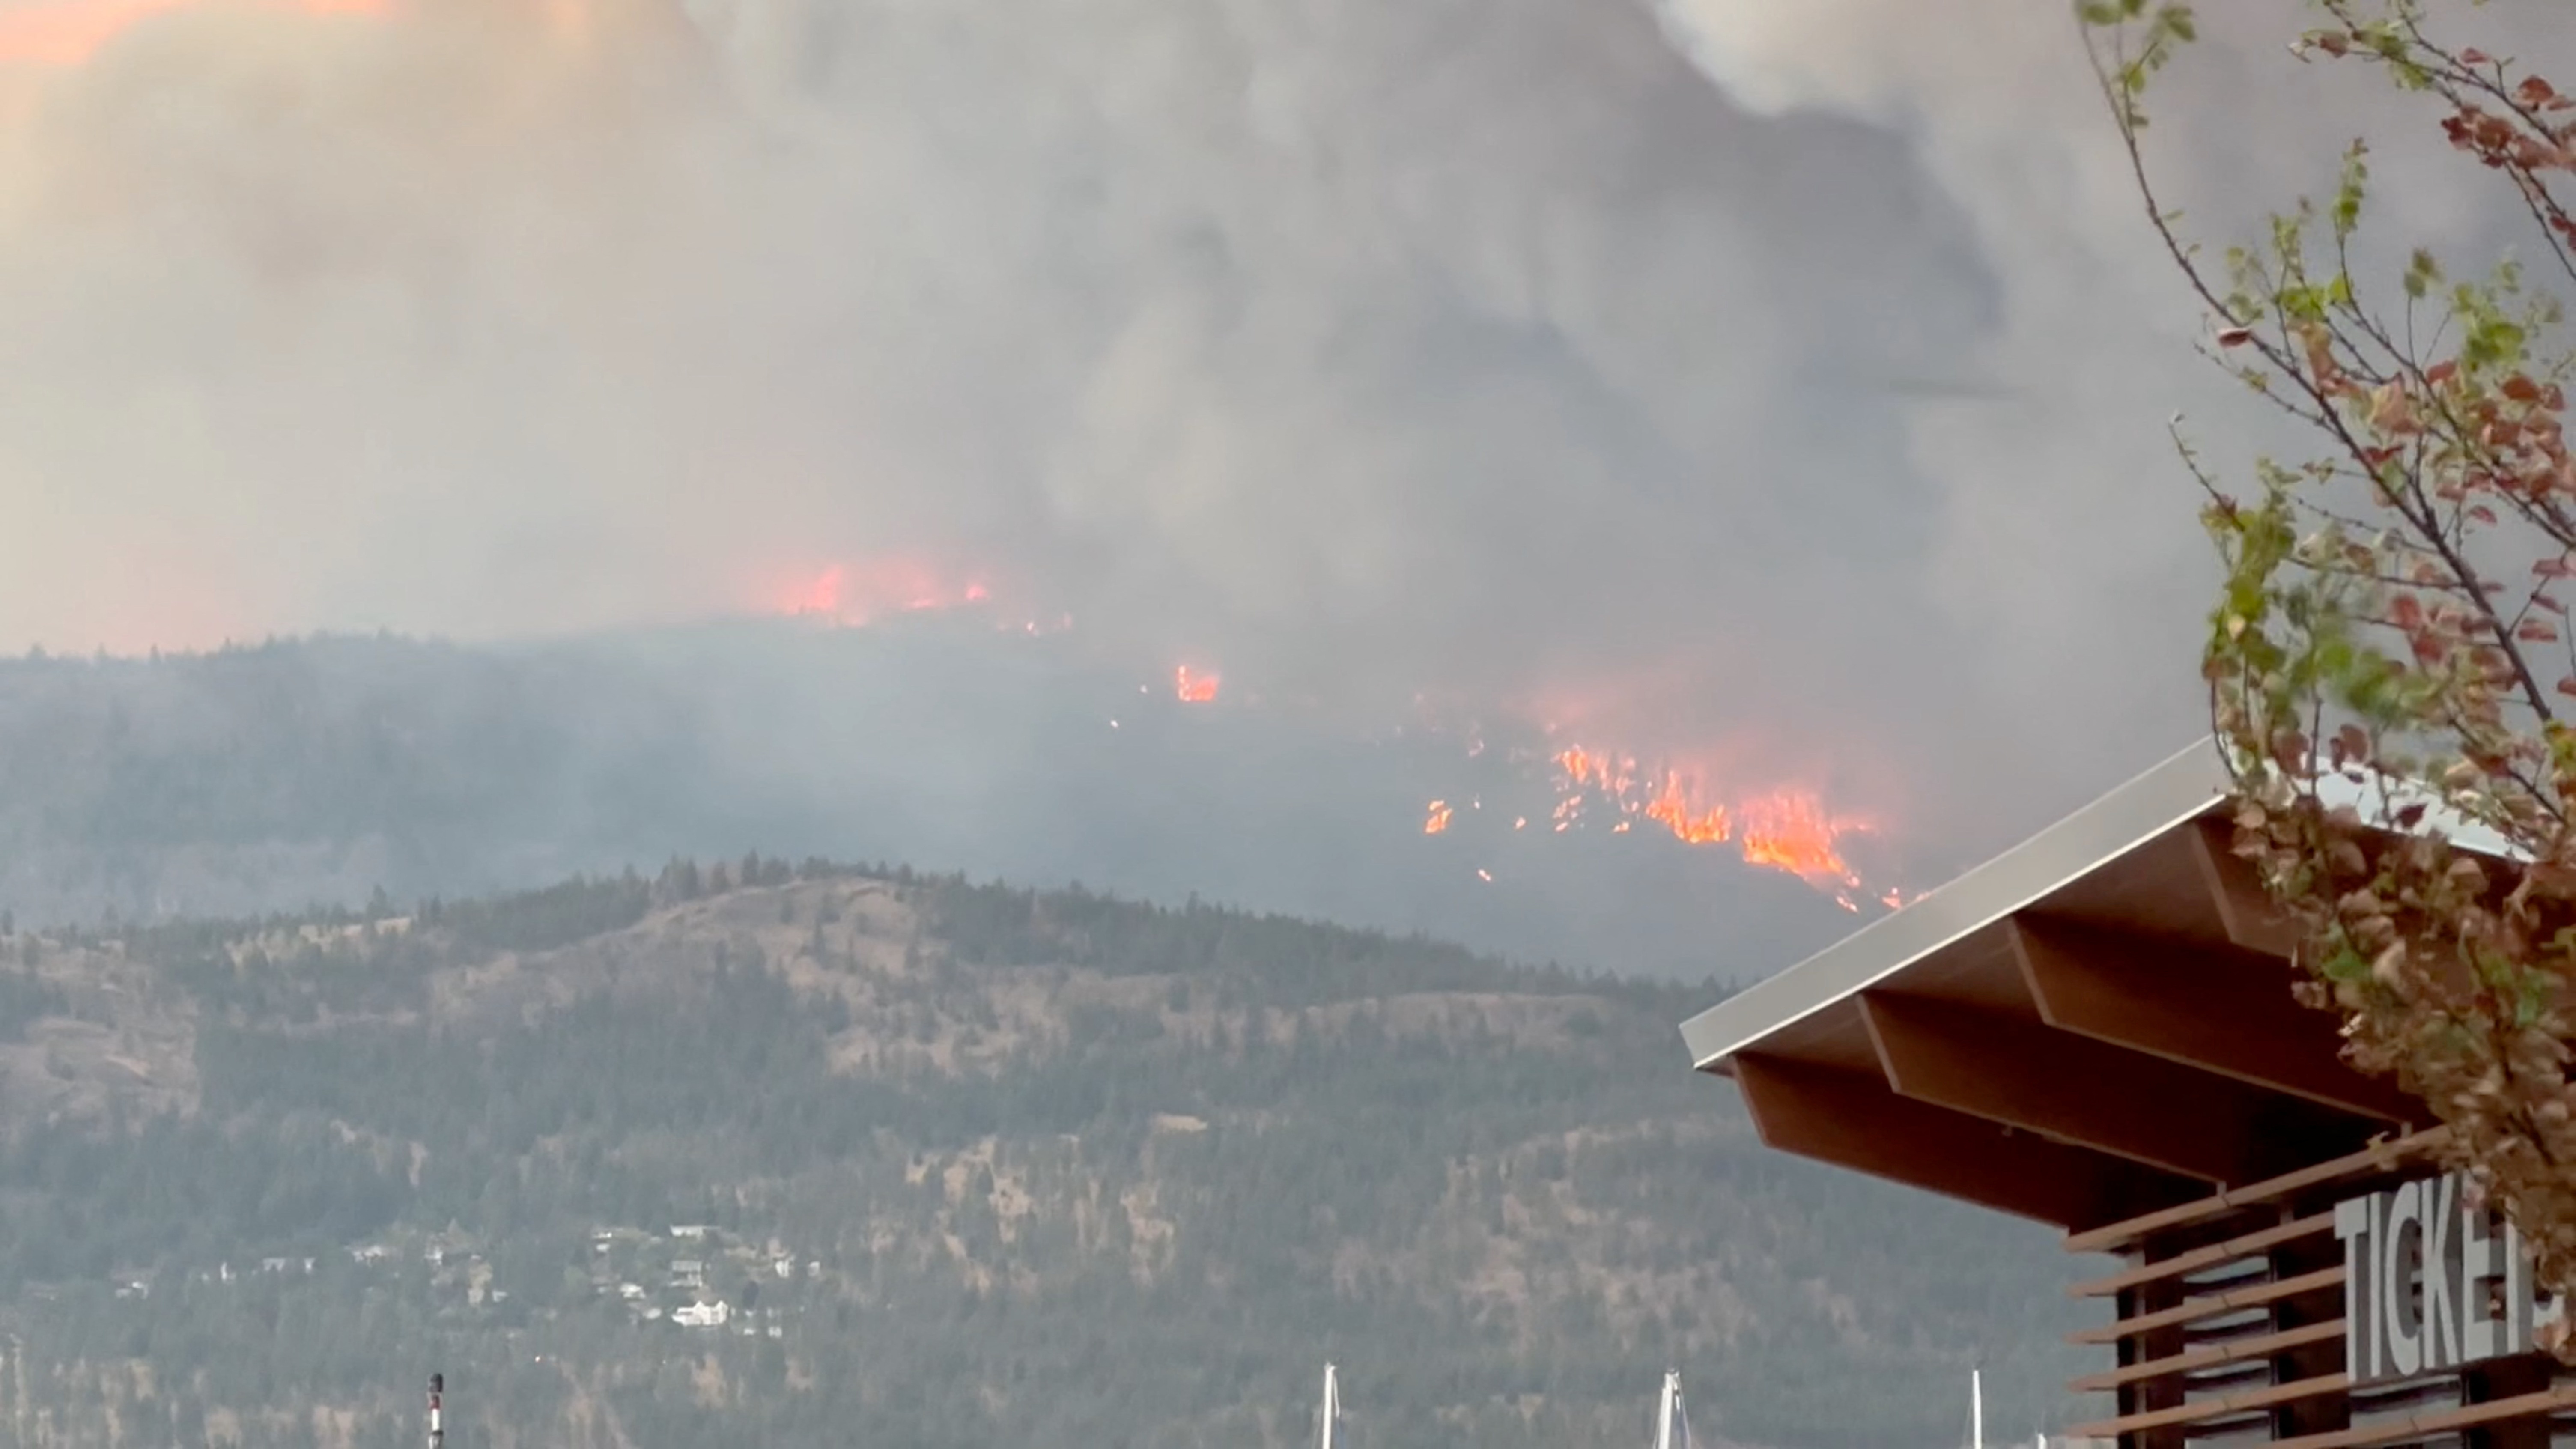 Wildfire in Kelowna, British Columbia